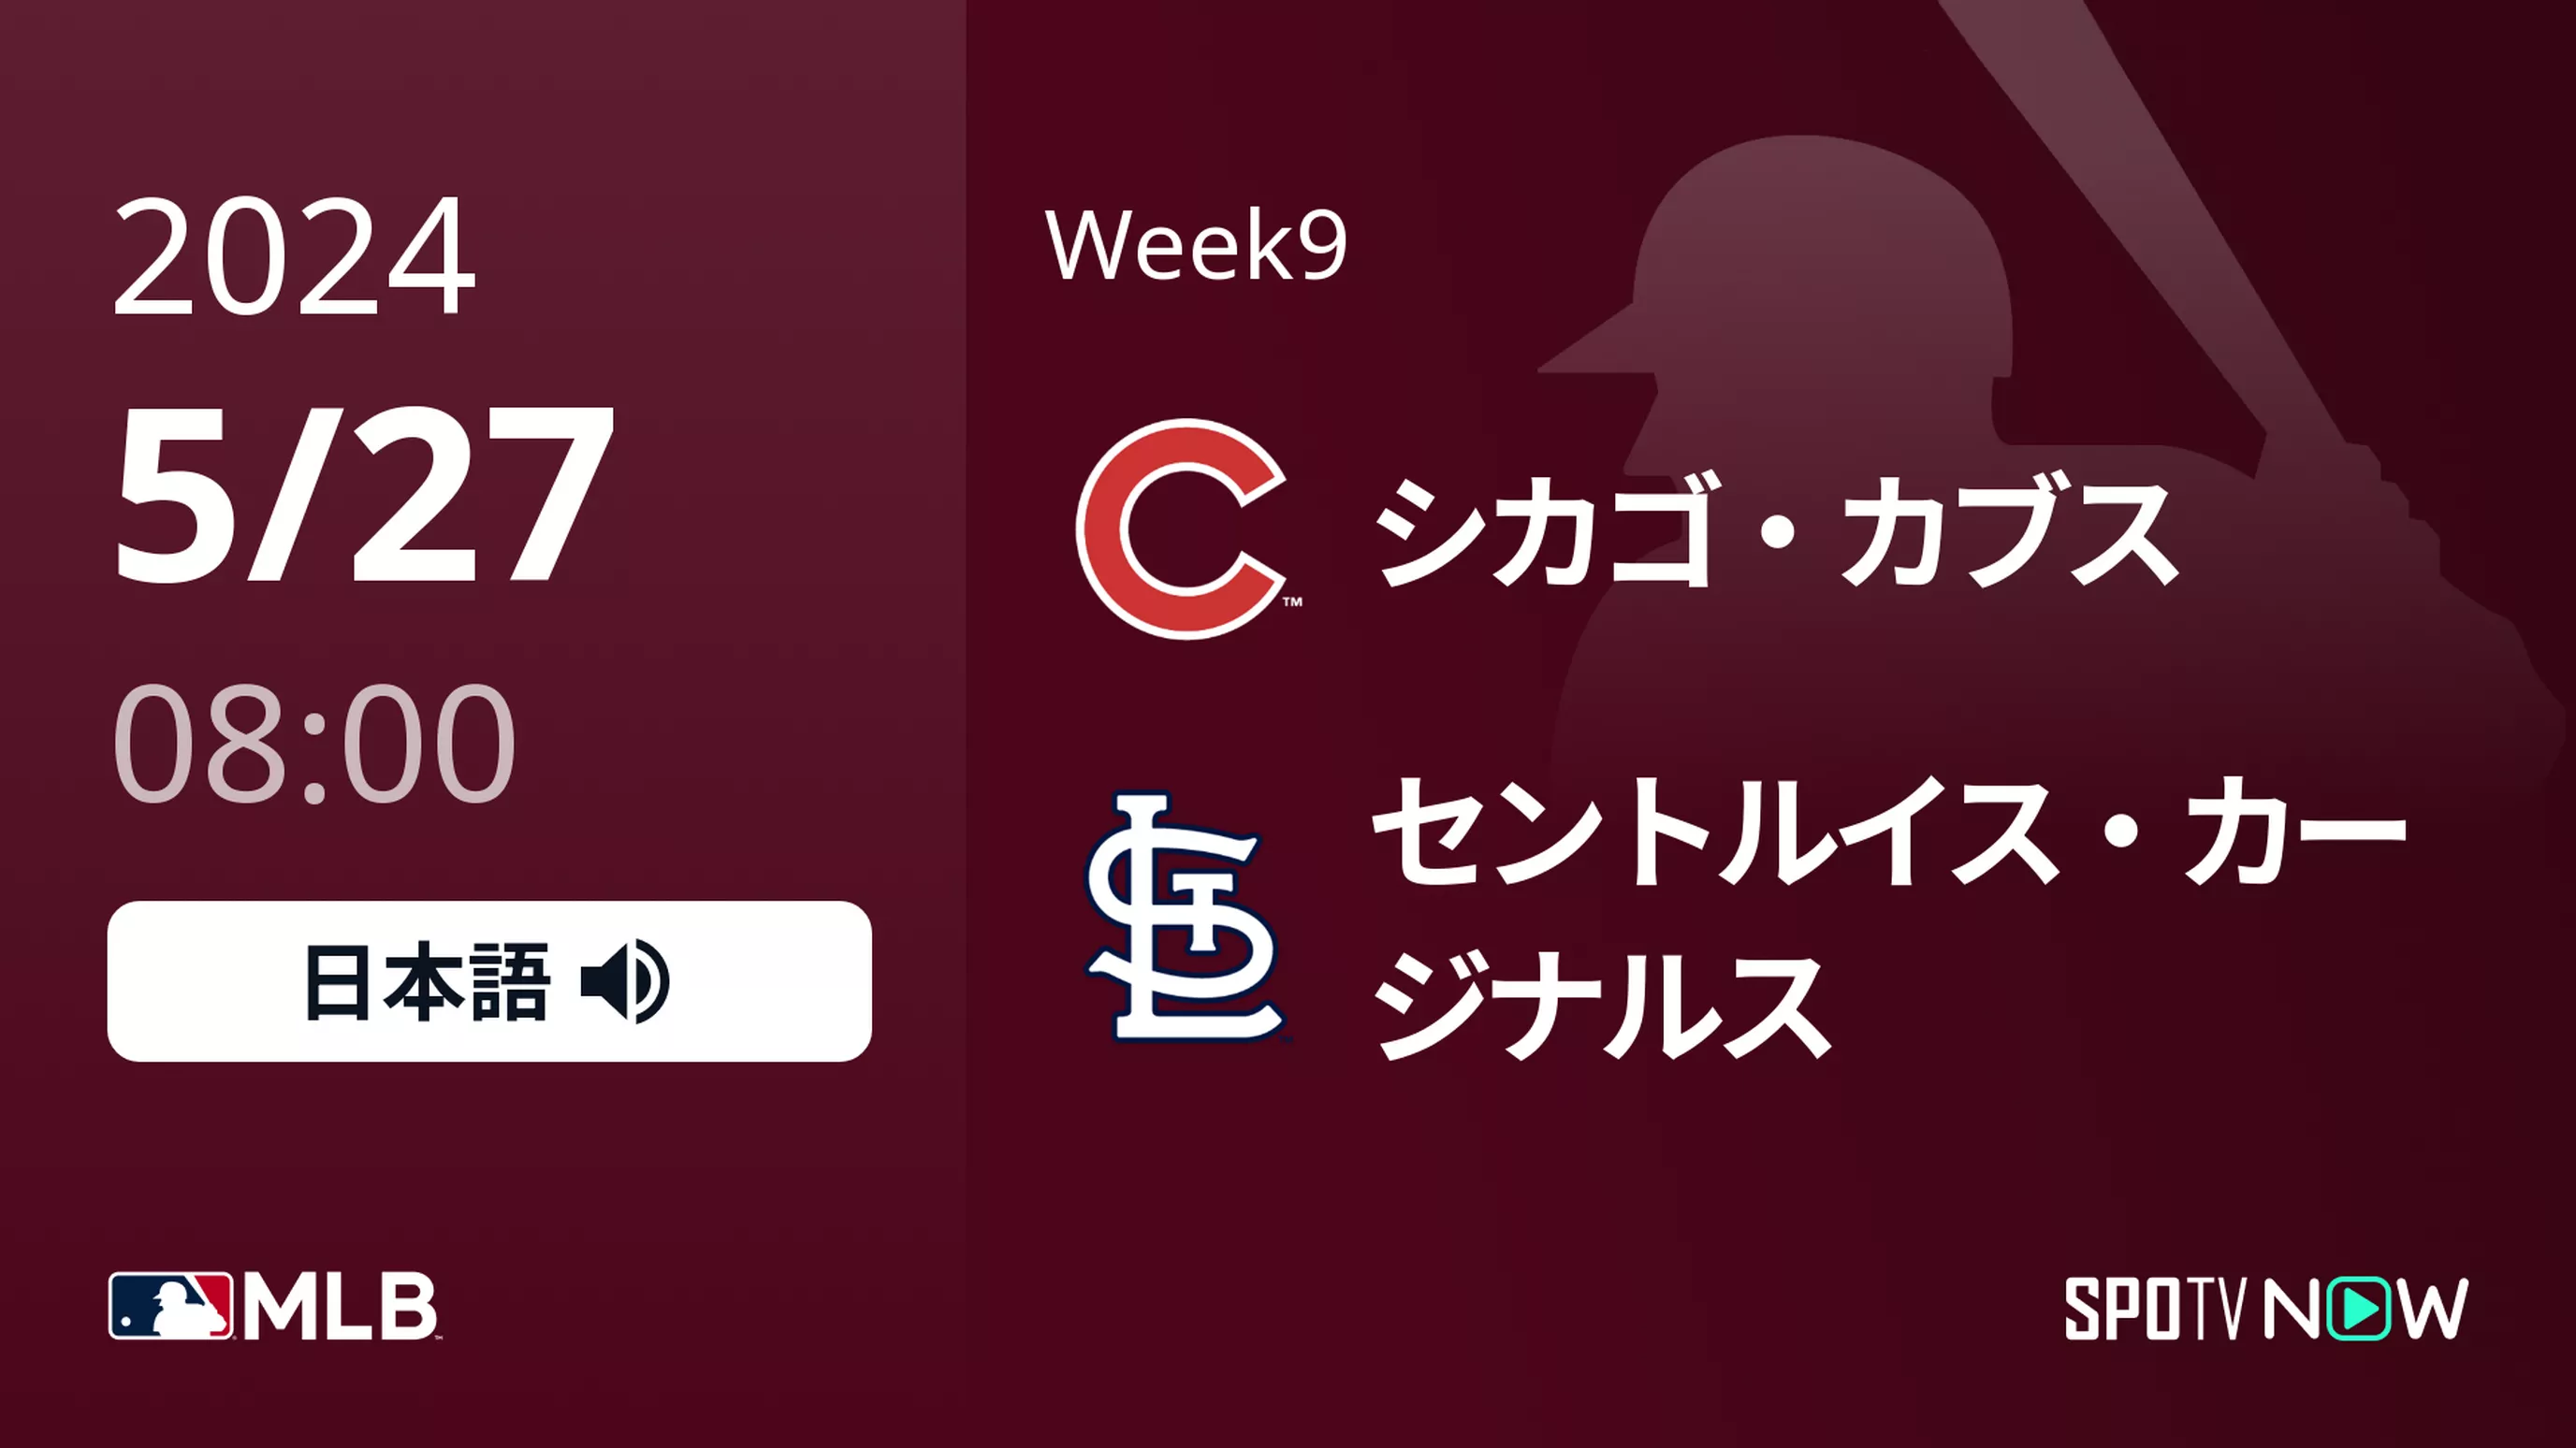 Week9 カブス vs カージナルス 5/27[MLB]